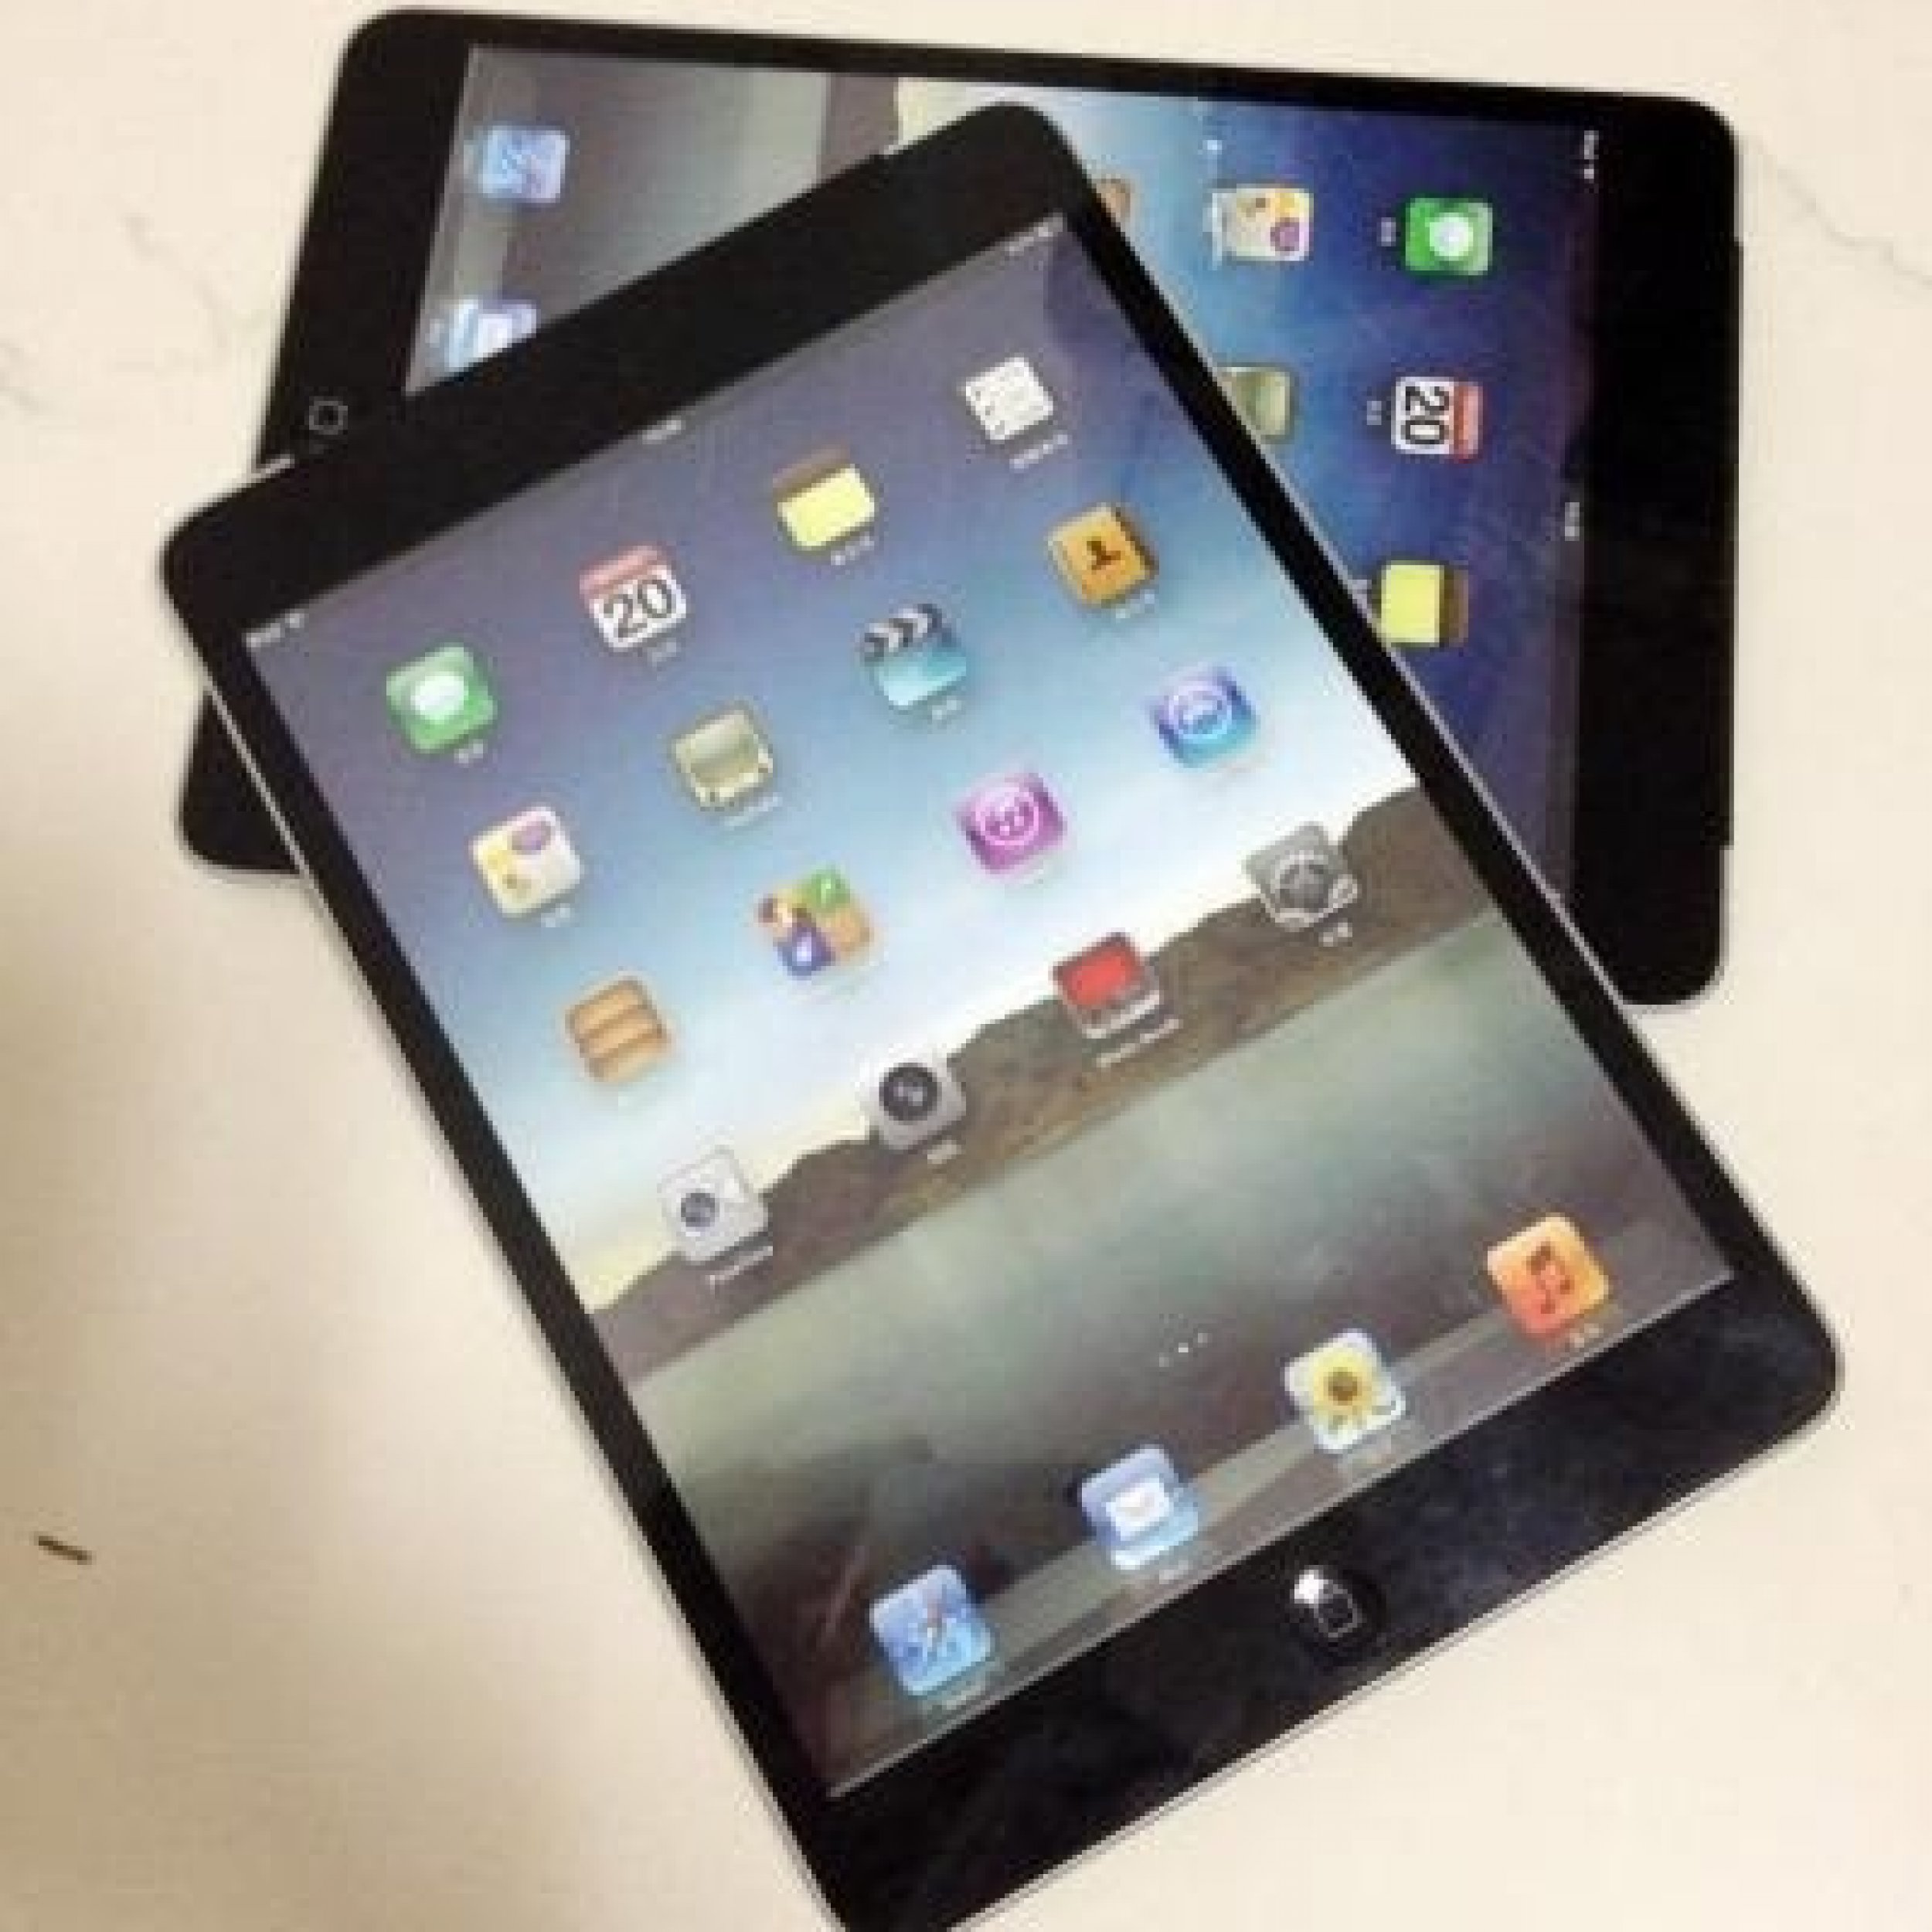 Apple iPad Mini Rumors Recap 8 Features, Specs Were Expecting At Release PICTURES